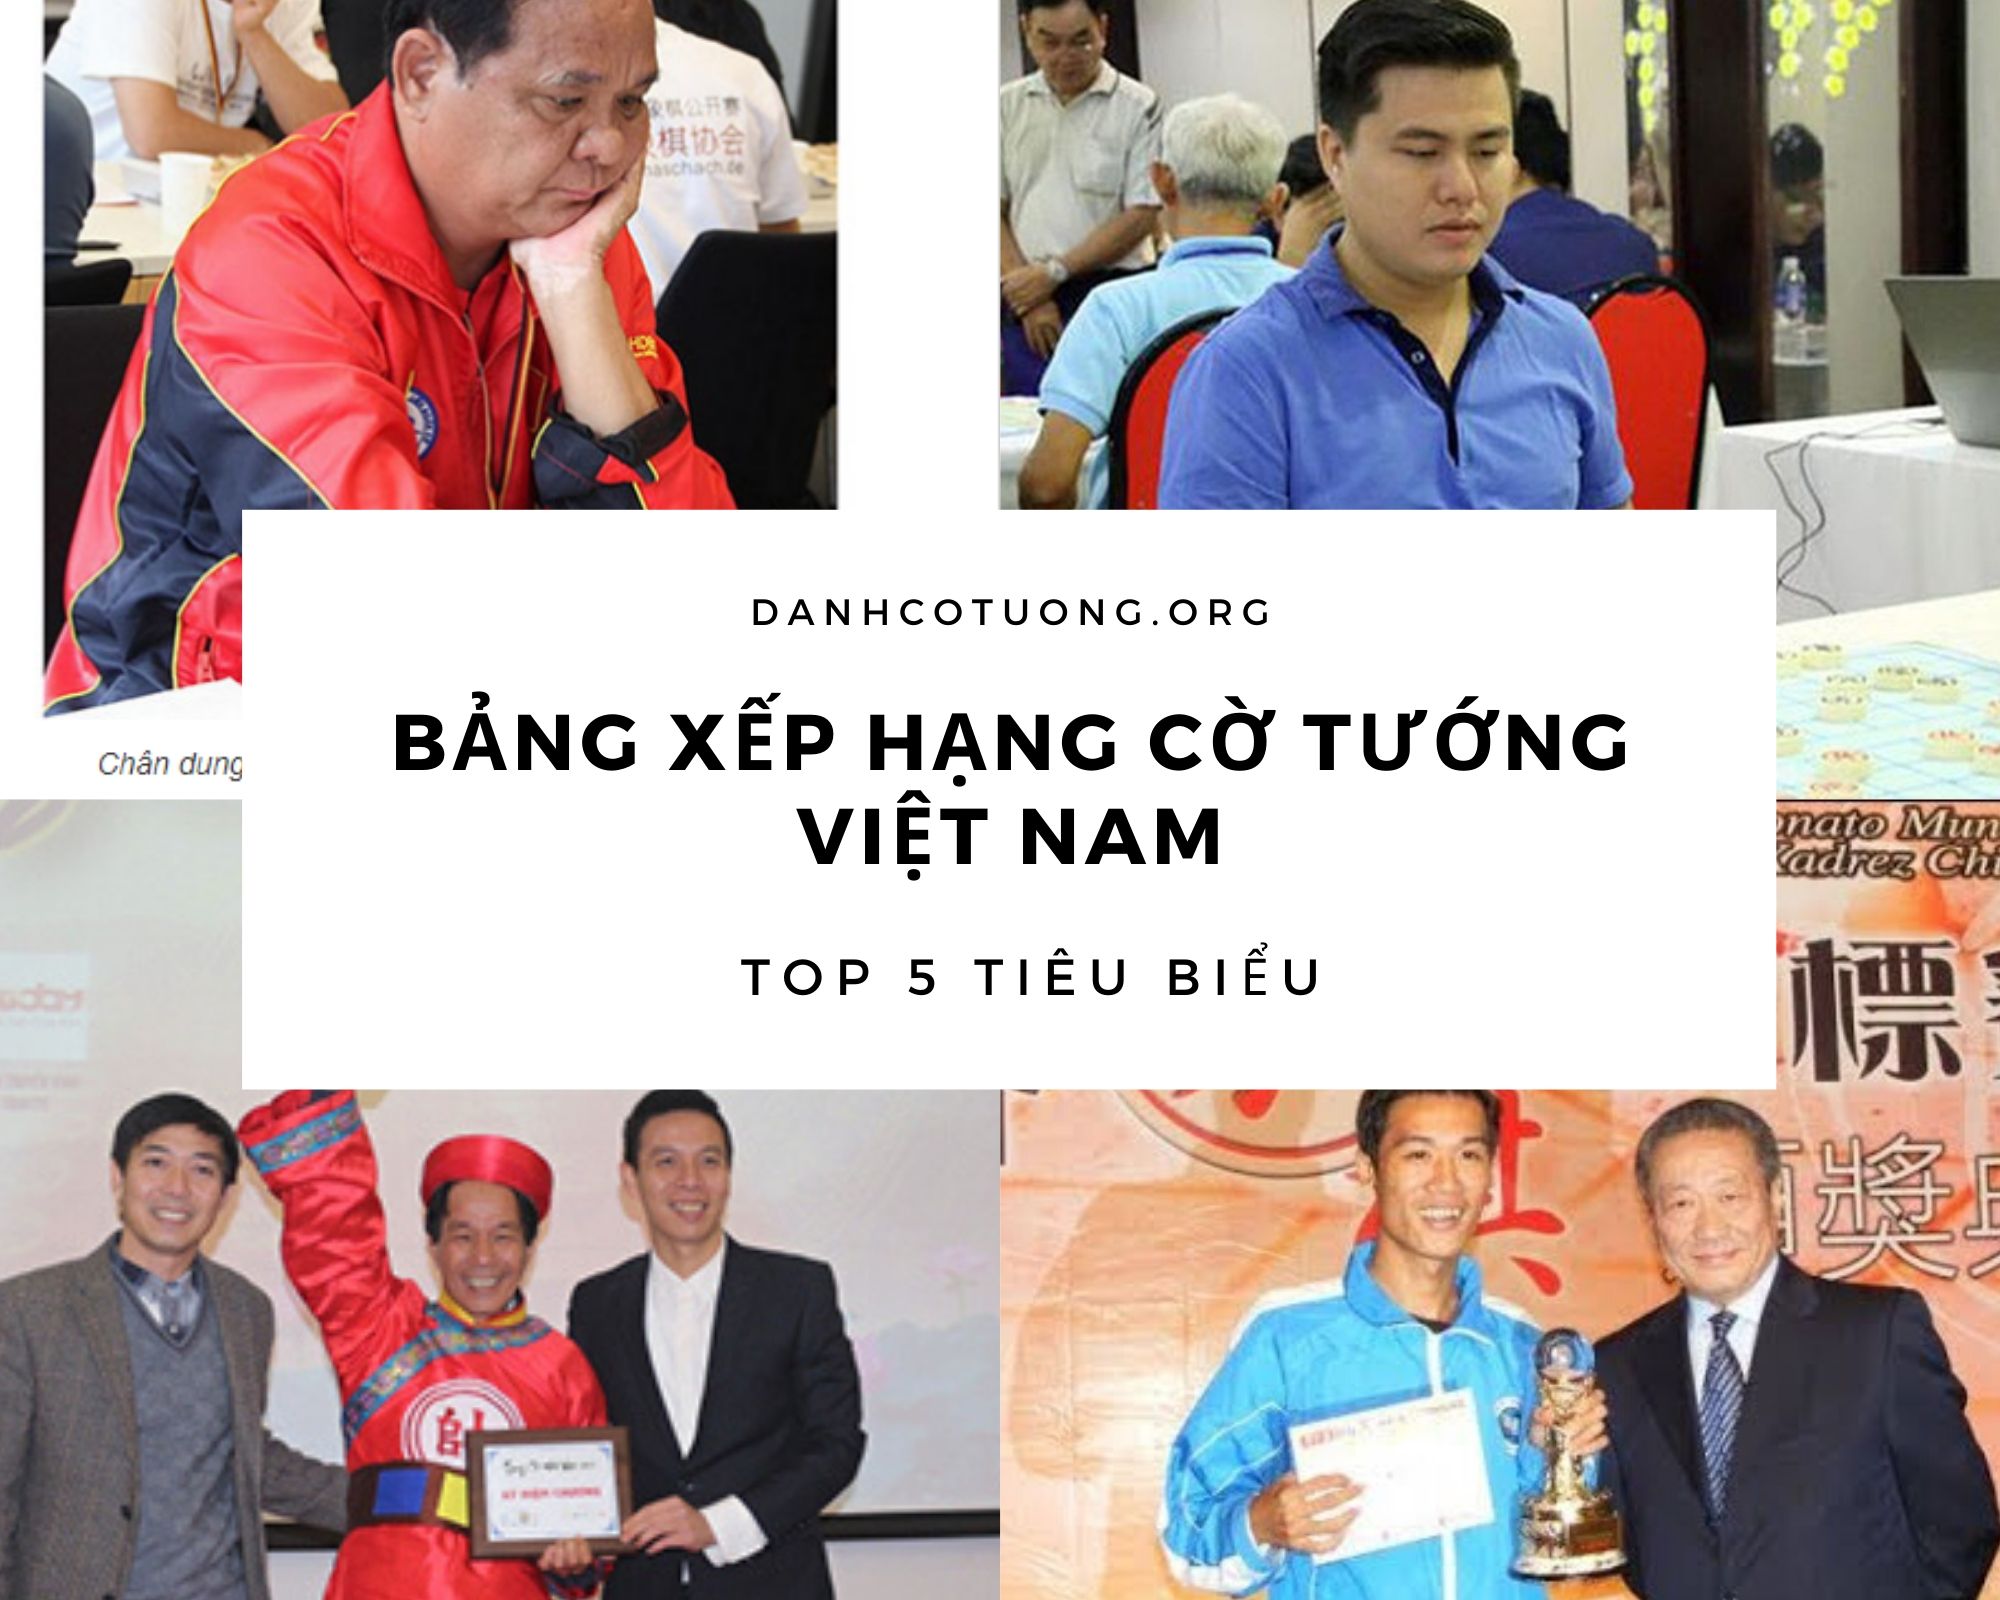 Bảng xếp hạng cờ tướng Việt Nam – Top 5 gương mặt tiêu biểu